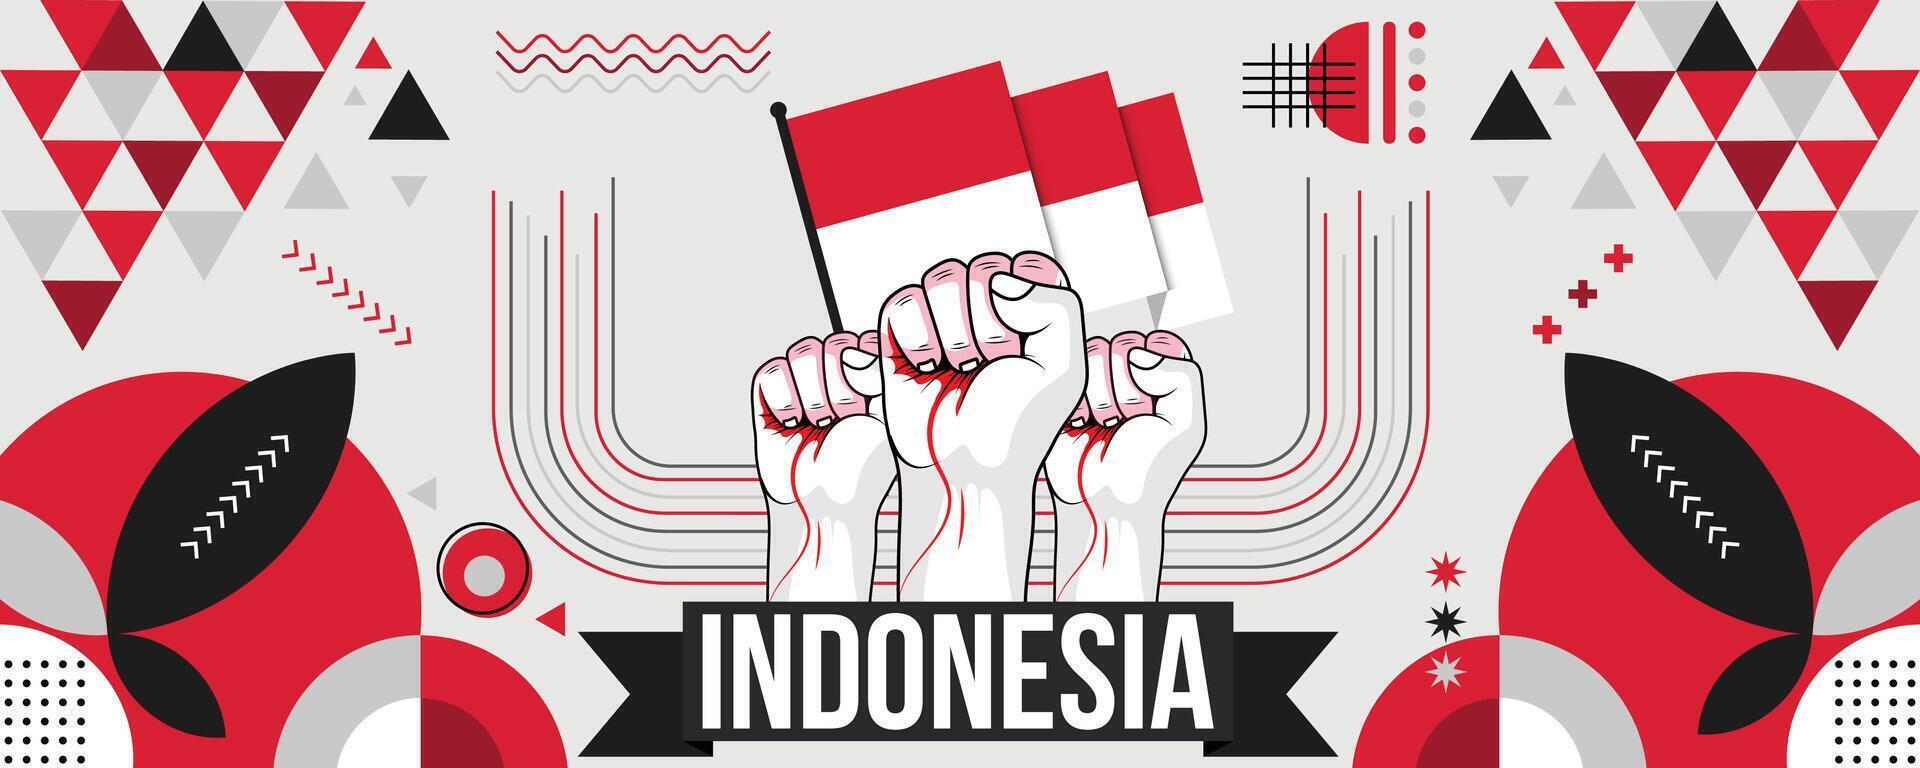 Indonesia nazionale o indipendenza giorno bandiera design per nazione celebrazione. bandiera di Indonesia moderno retrò design astratto geometrico icone. vettore illustrazione